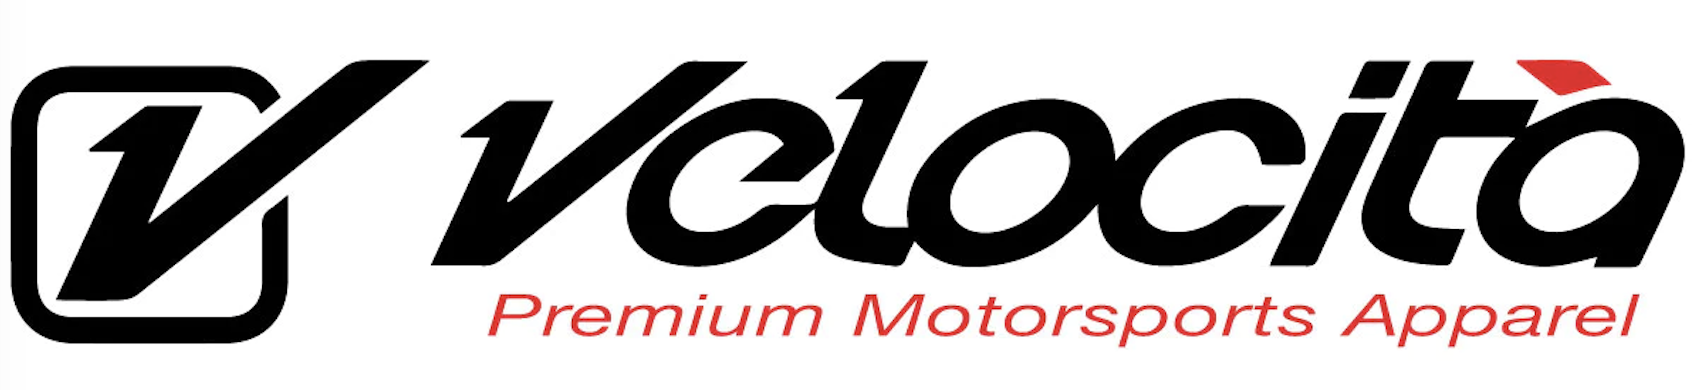 Velocita Premium Motorsports Apparel